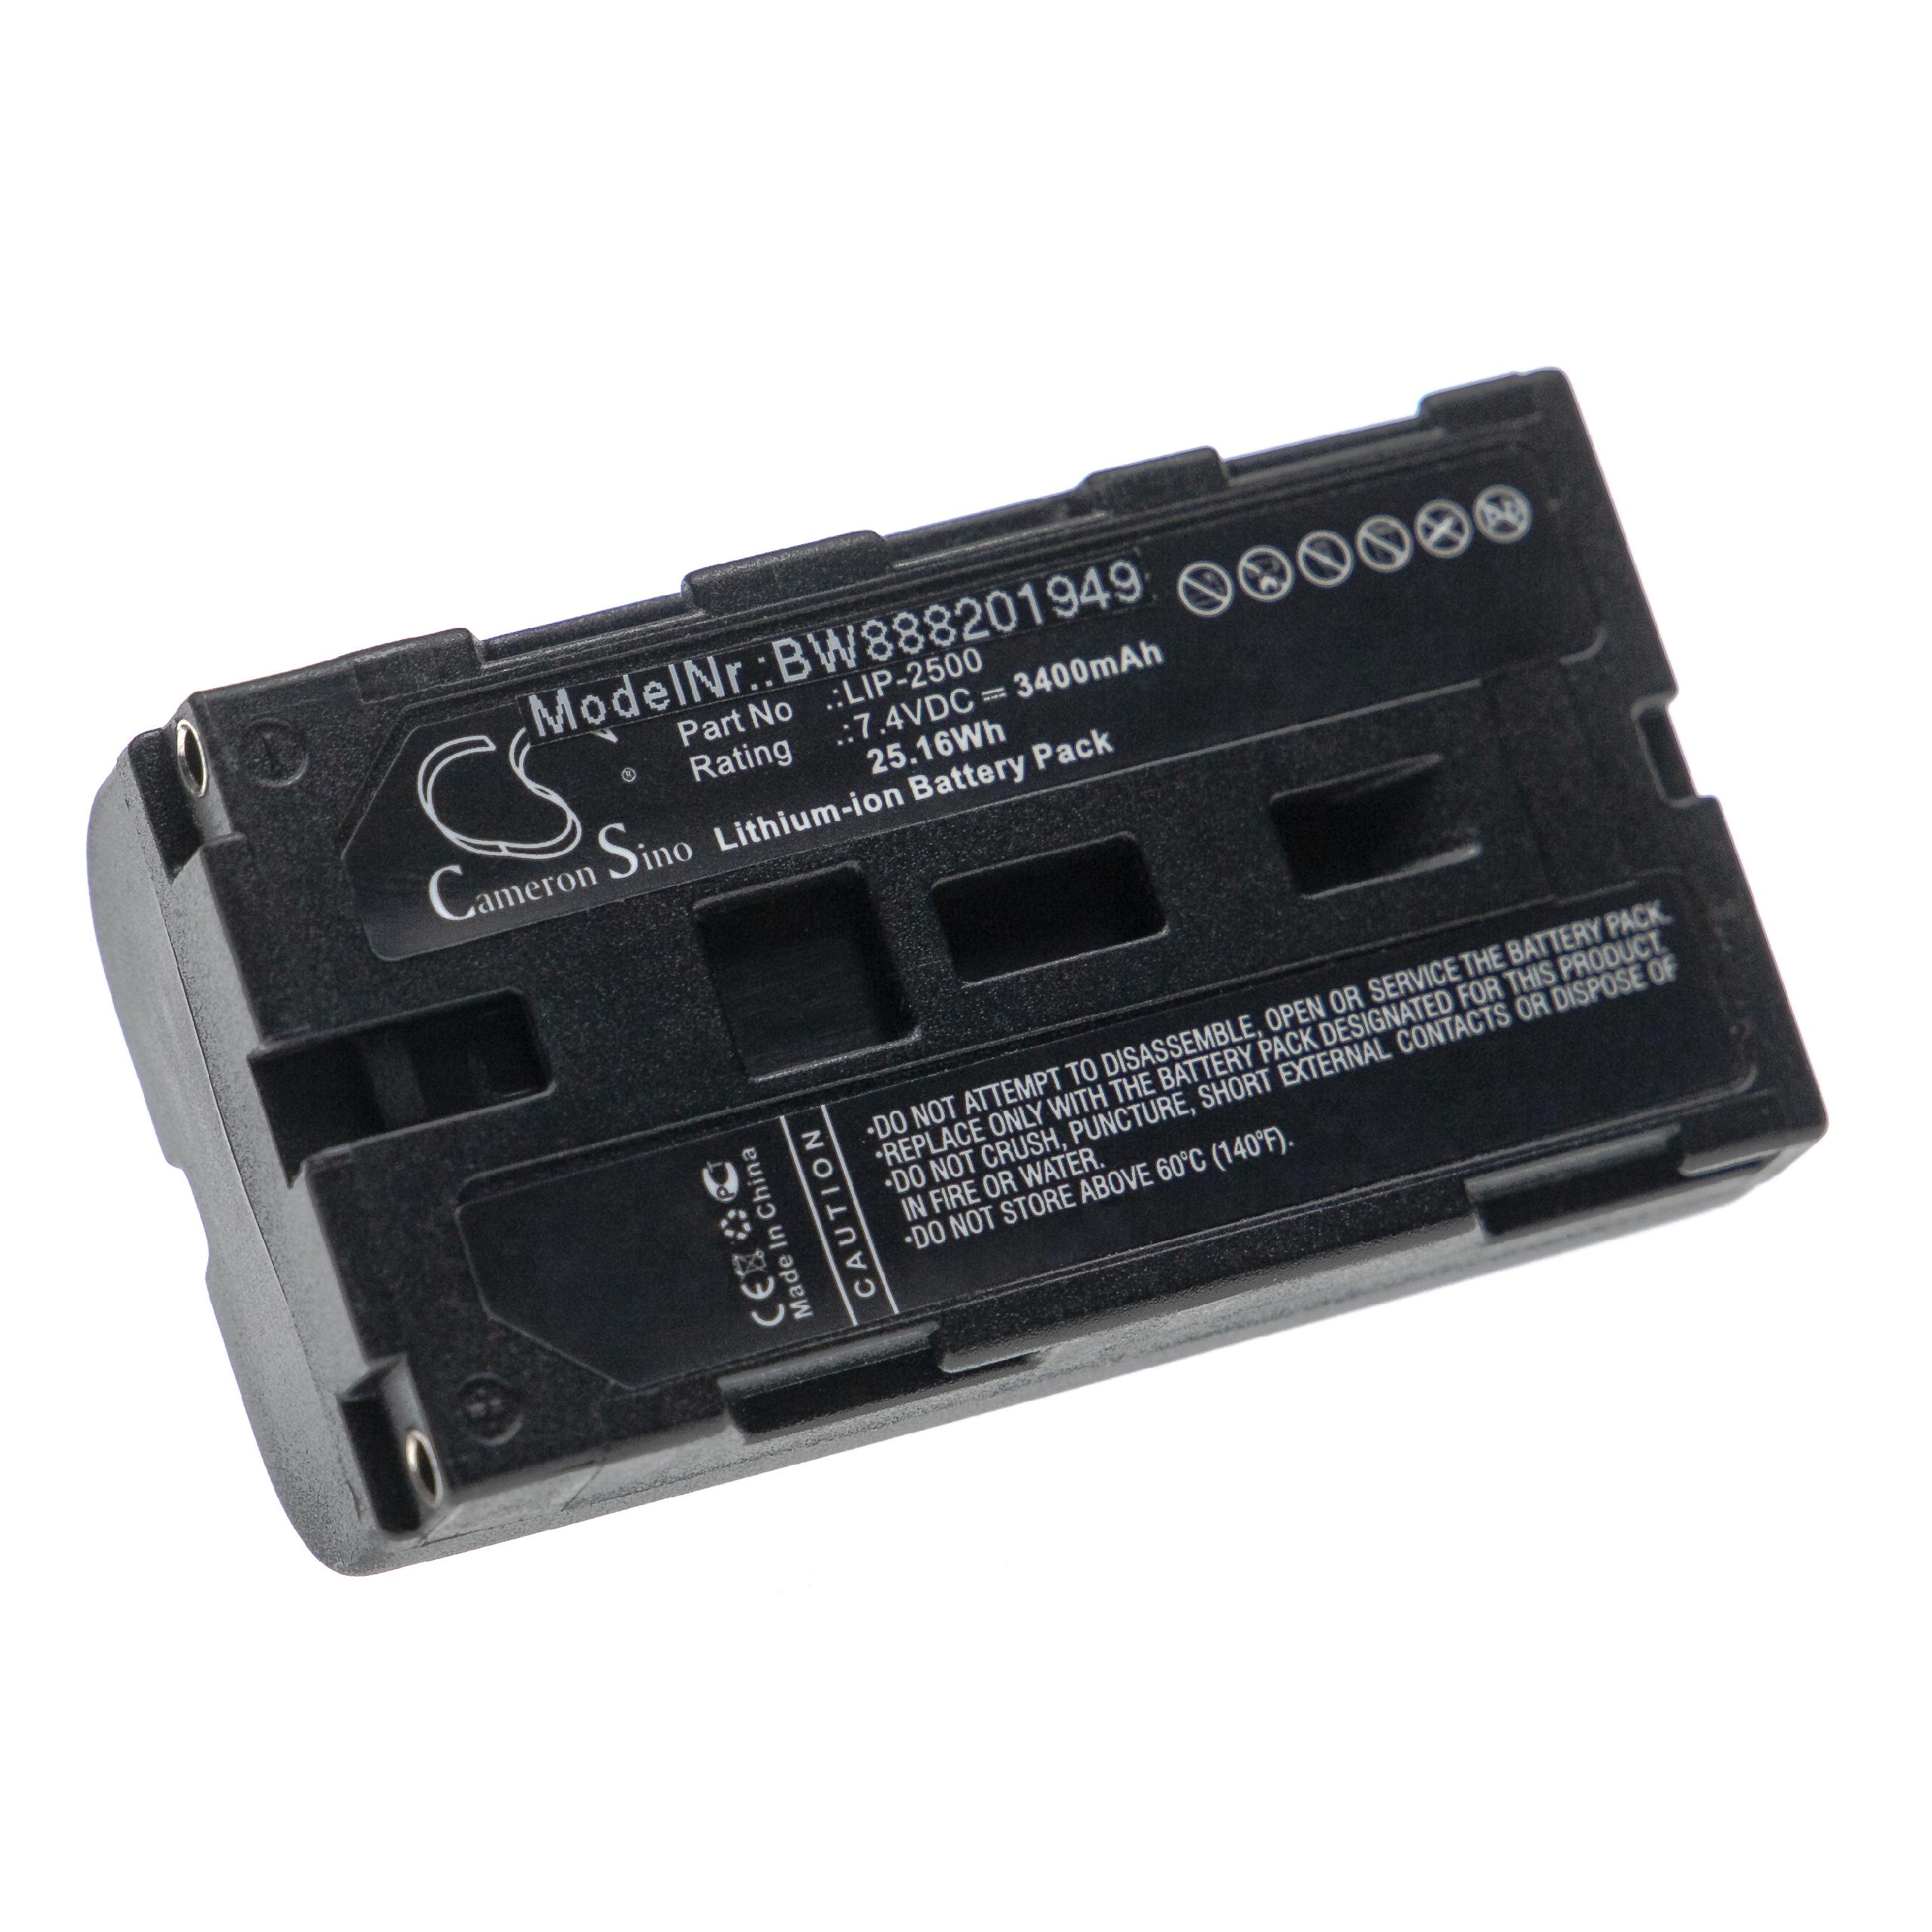 Batterie remplace Epson C32C831091, LIP-2500, NP-500, NP-500H pour imprimante - 3400mAh 7,4V Li-ion